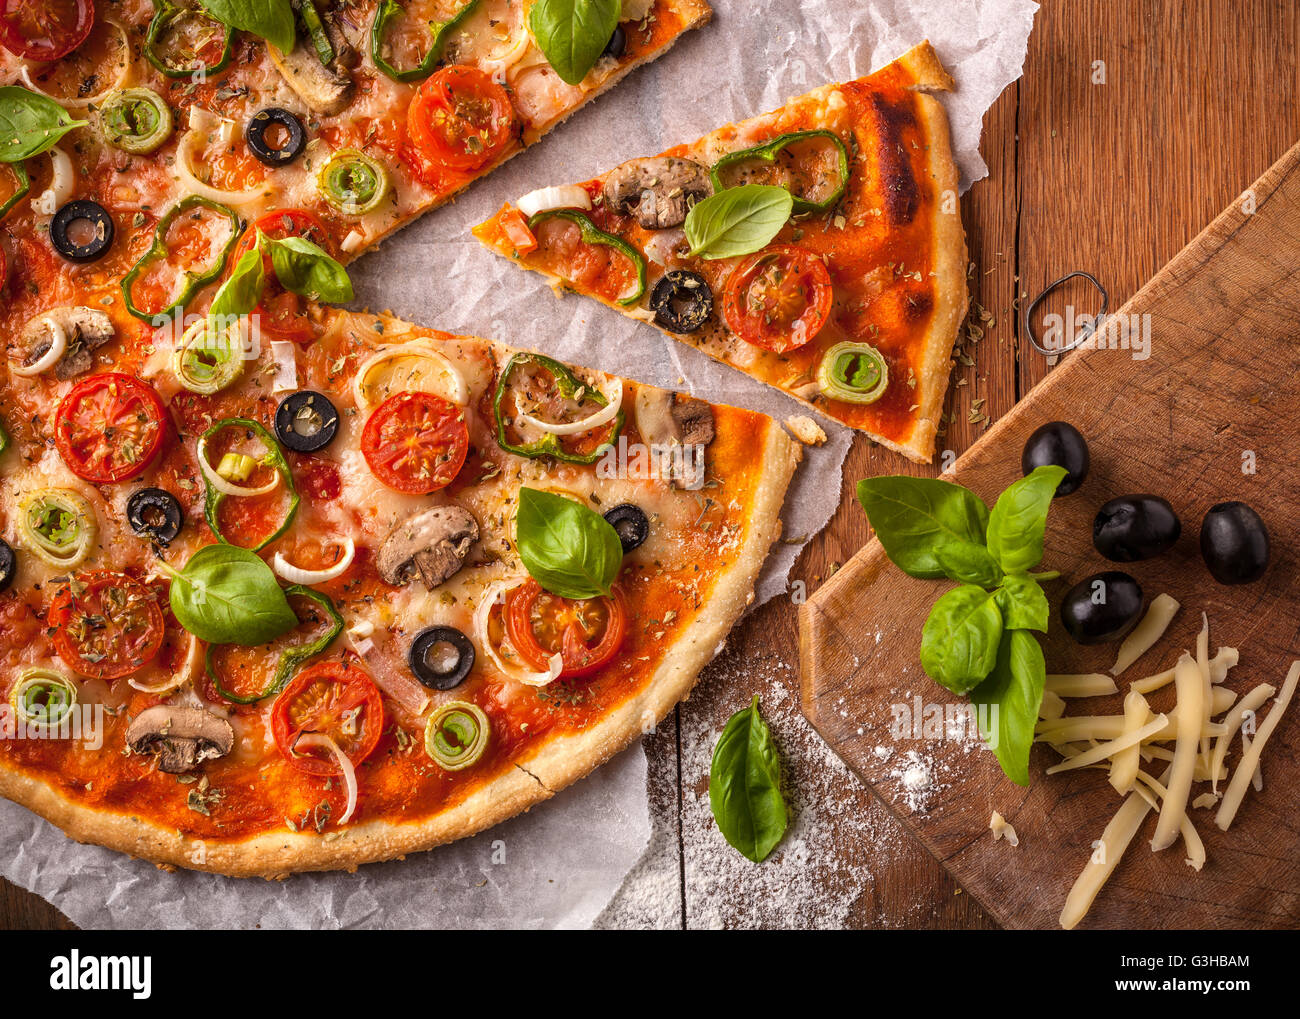 Pizza végétarienne fait maison sur une table en bois. Les ingrédients de la pizza sont des champignons, olives noires, fromage mozzarella Banque D'Images